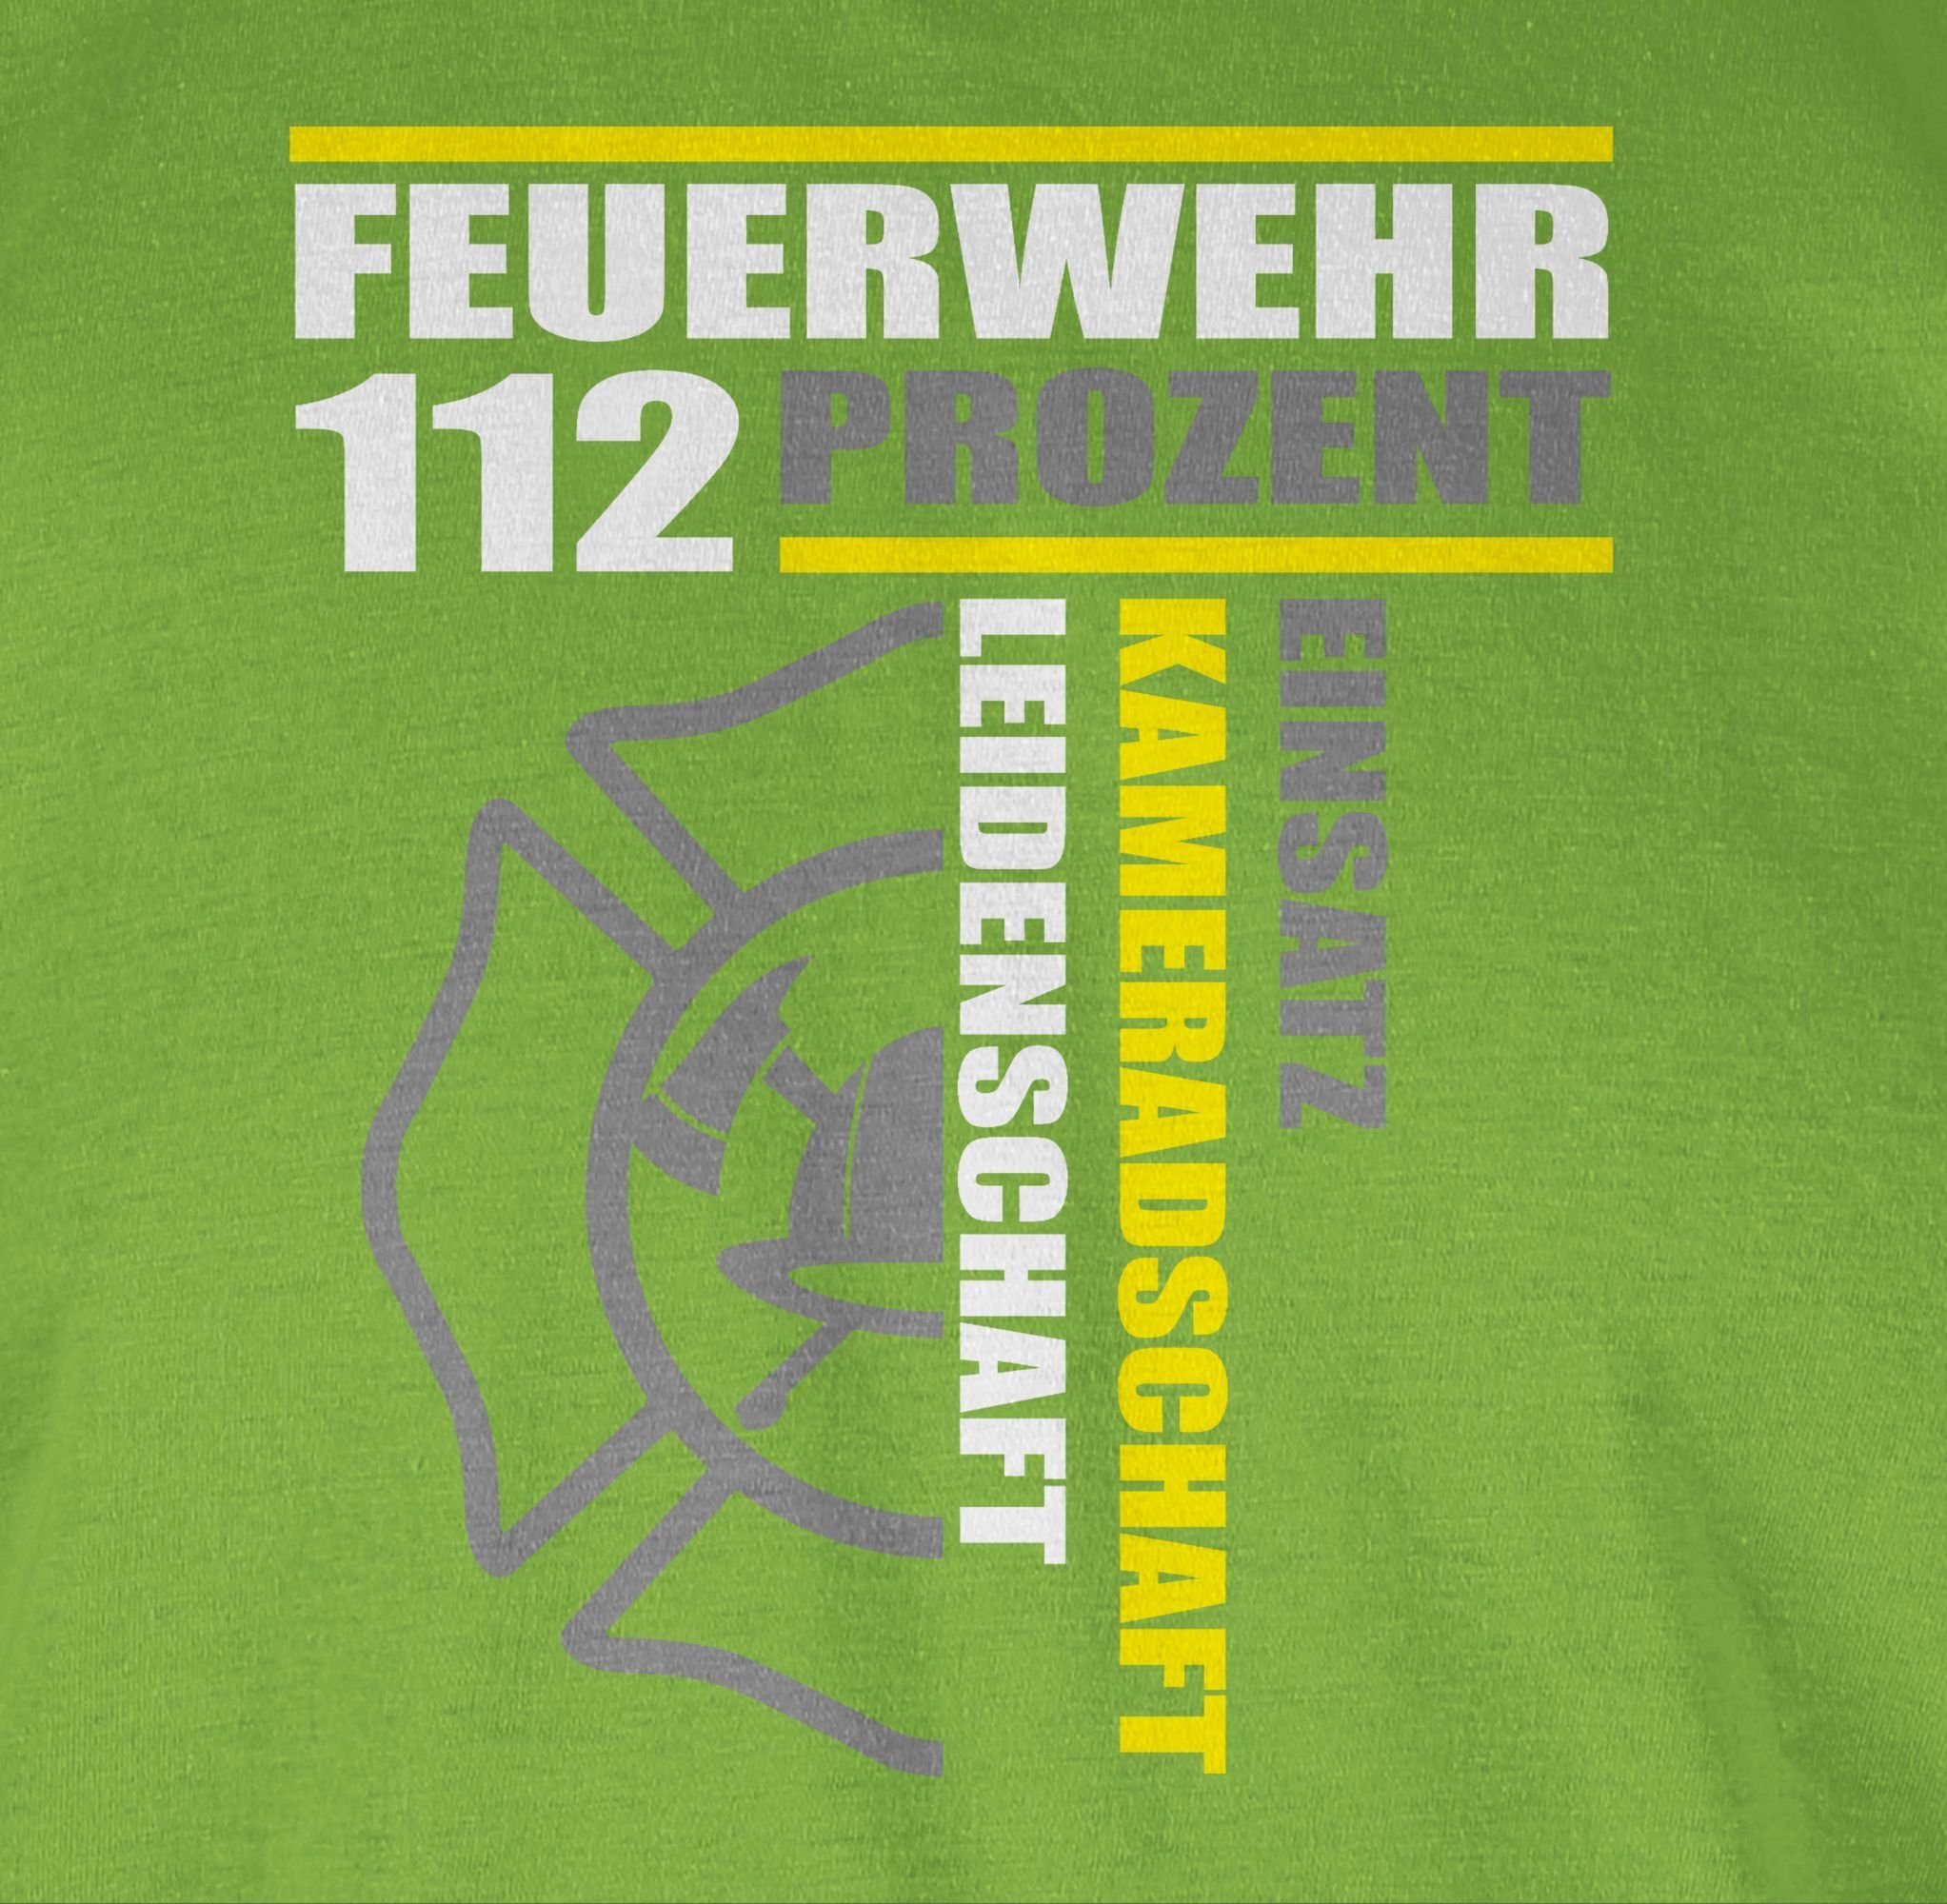 T-Shirt 112 Kameradschaft Leidenschaft - Freiwilli Shirtracer Einsatz - Feuerwehr Prozent 03 Hellgrün Feuerwehr